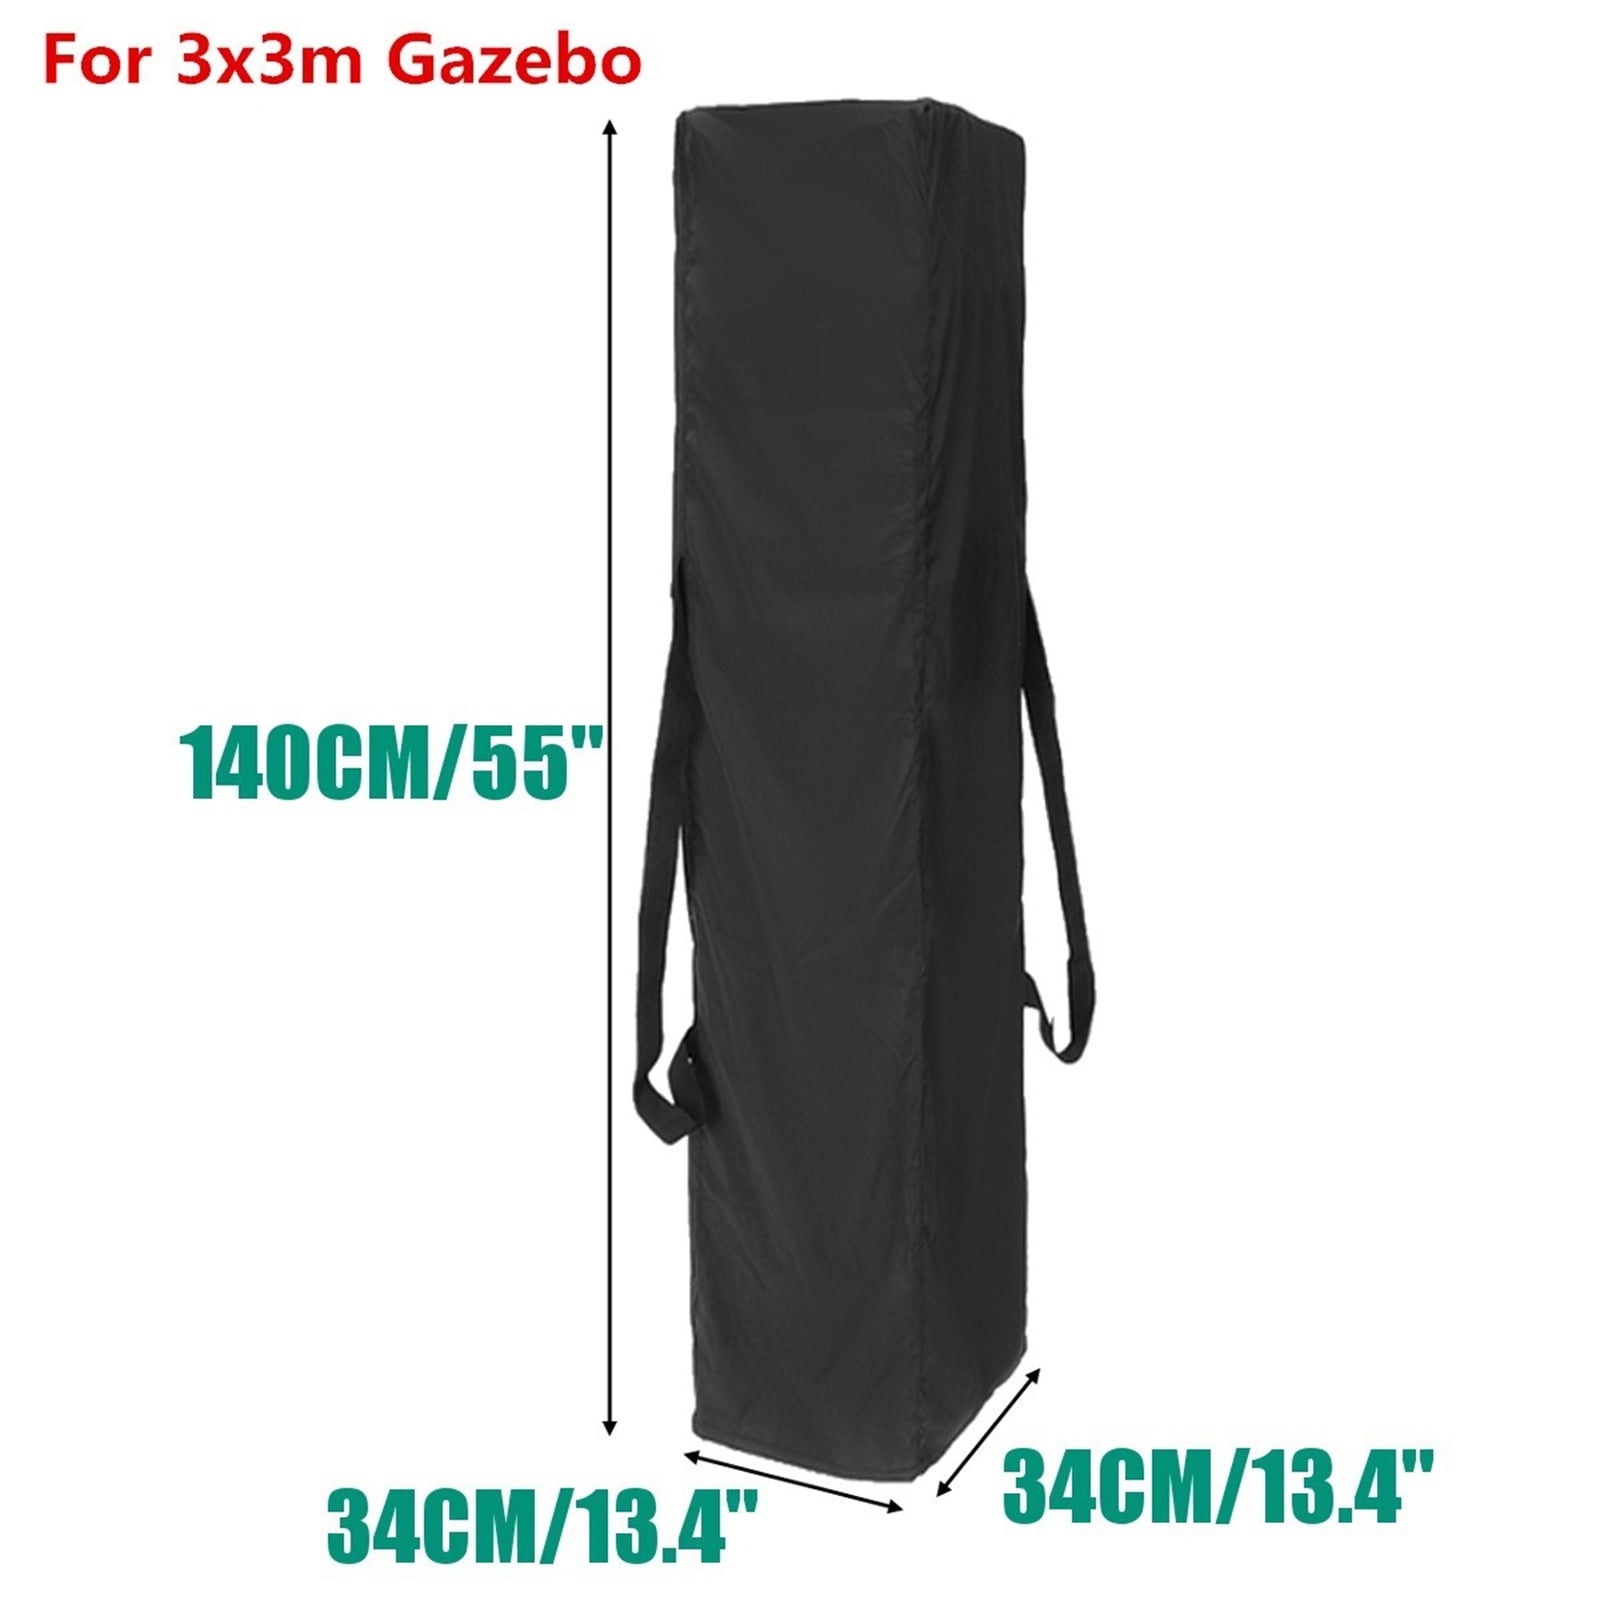 Gazebo Impermeabile Marquee Carry Bag Garden Poliestere 3 Con 2 Maniglie Laterali